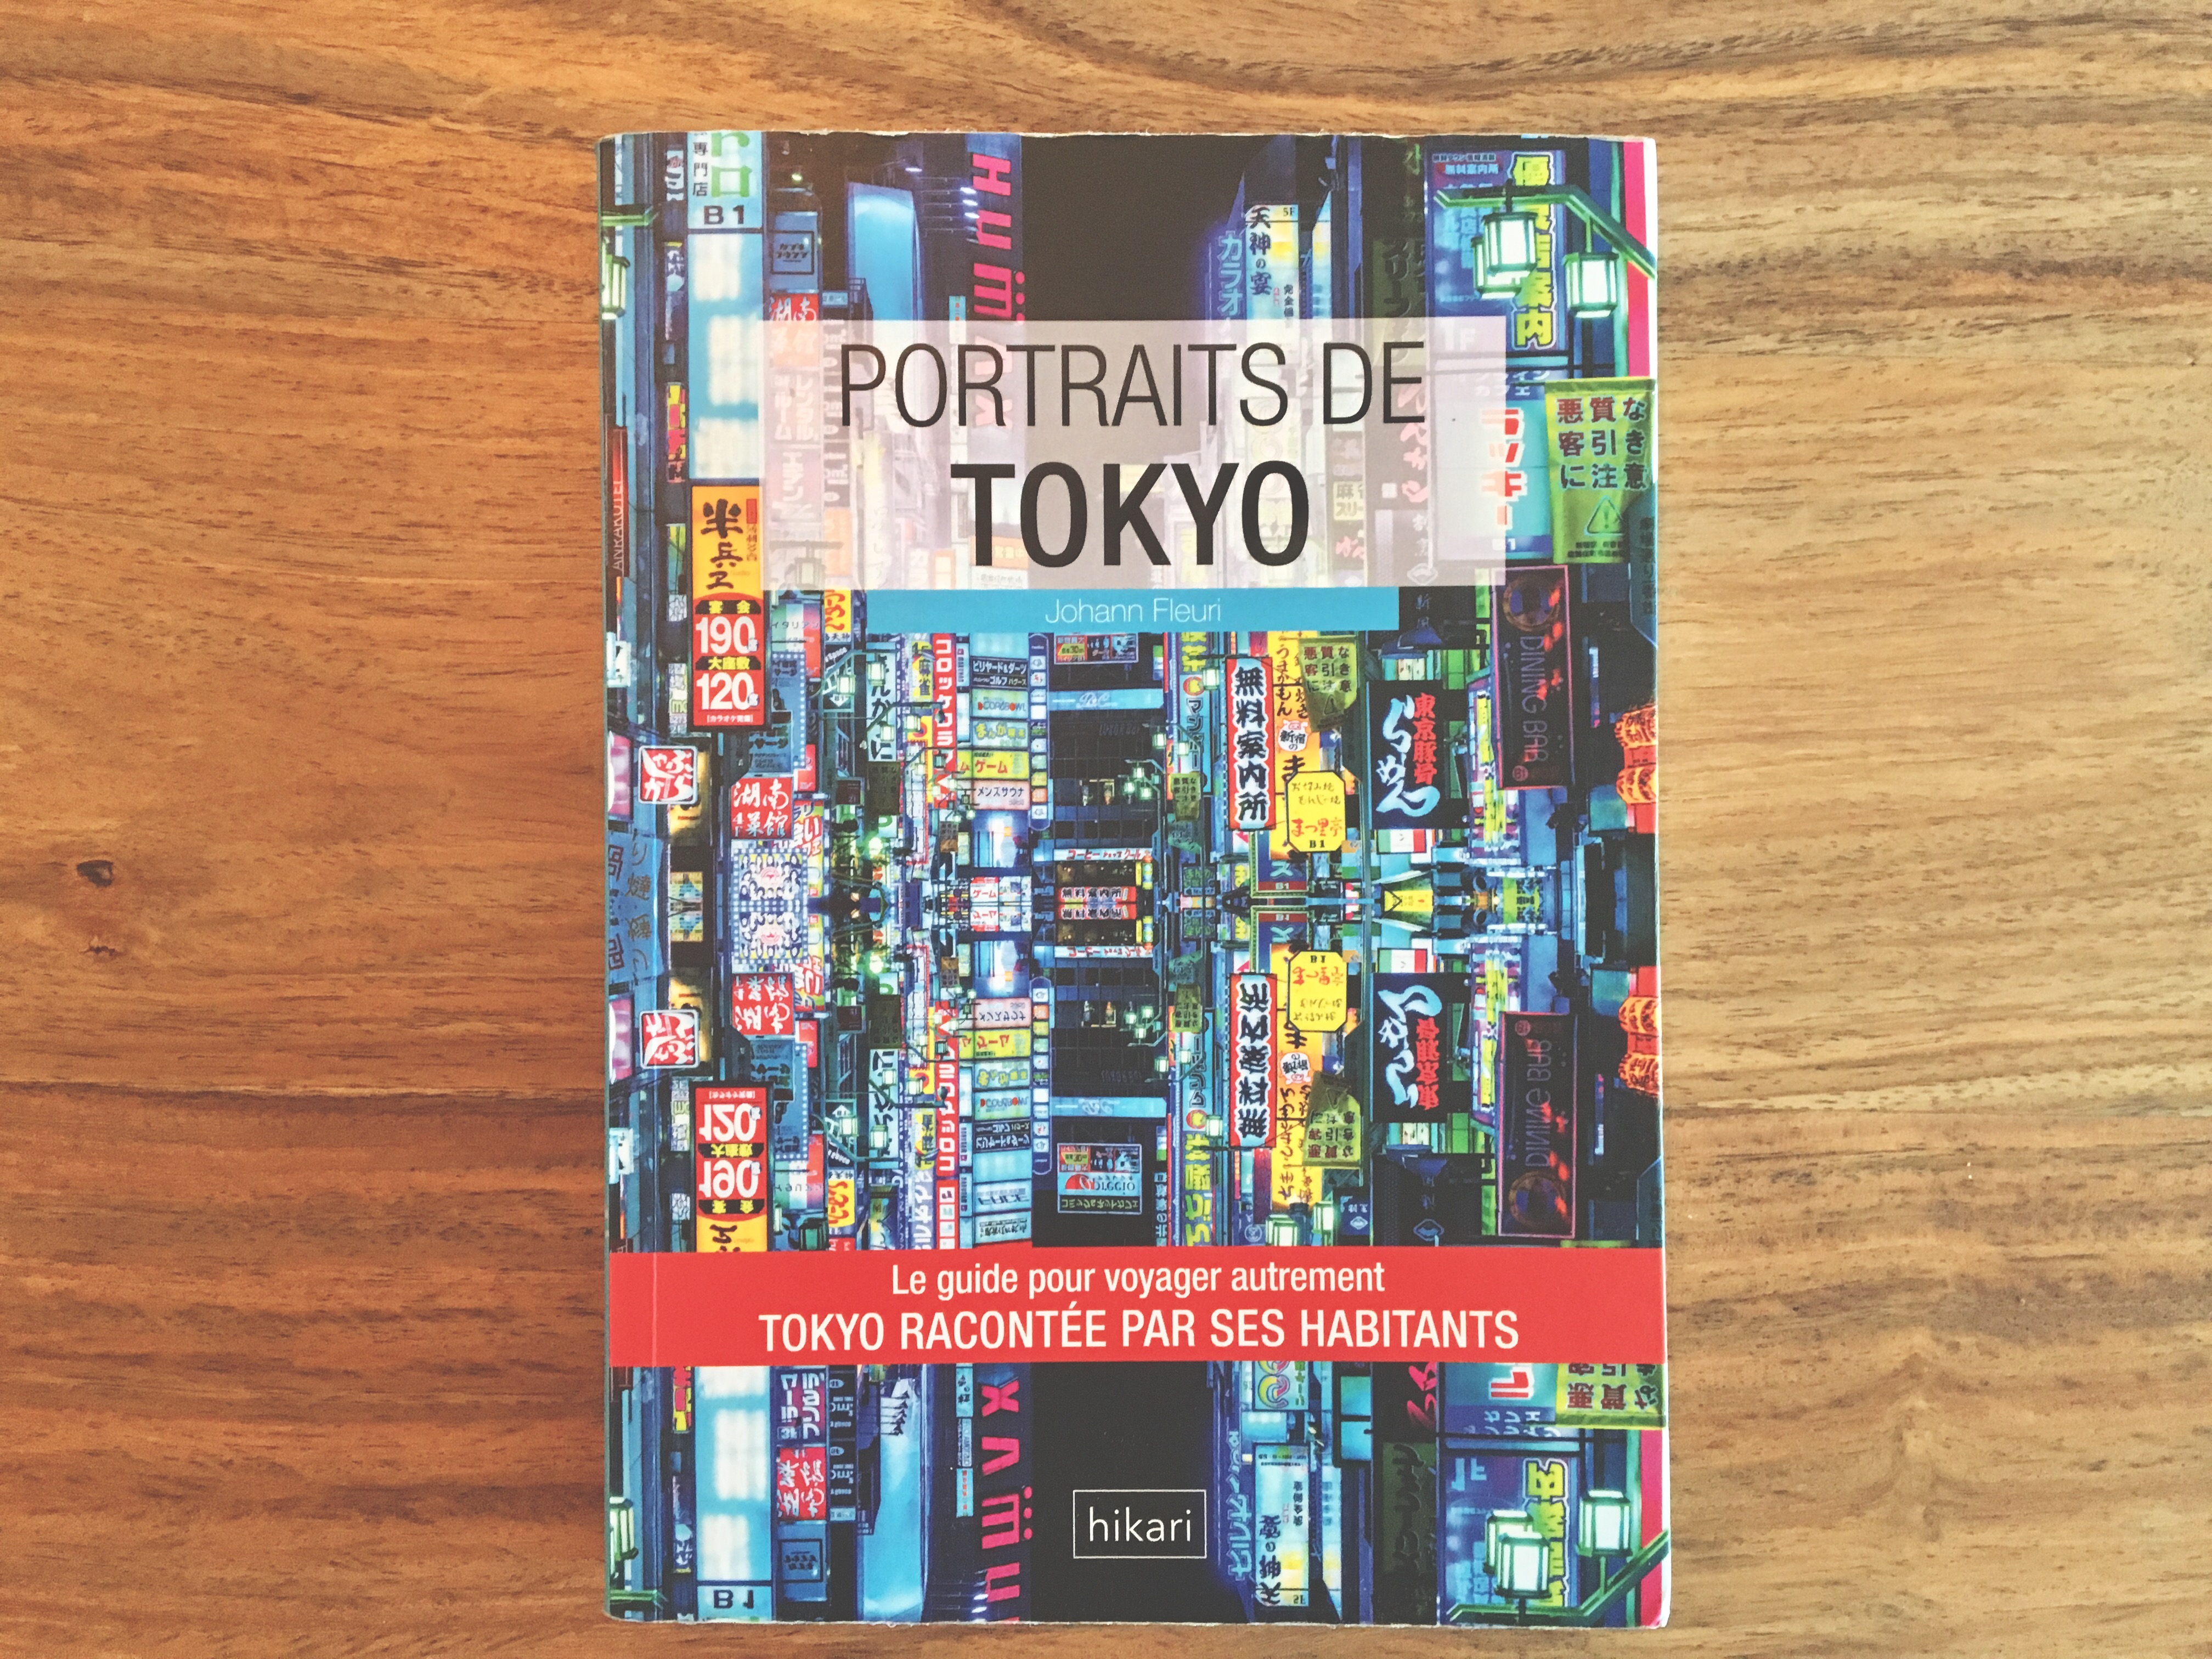 Guide de voyage Portraits de Tokyo